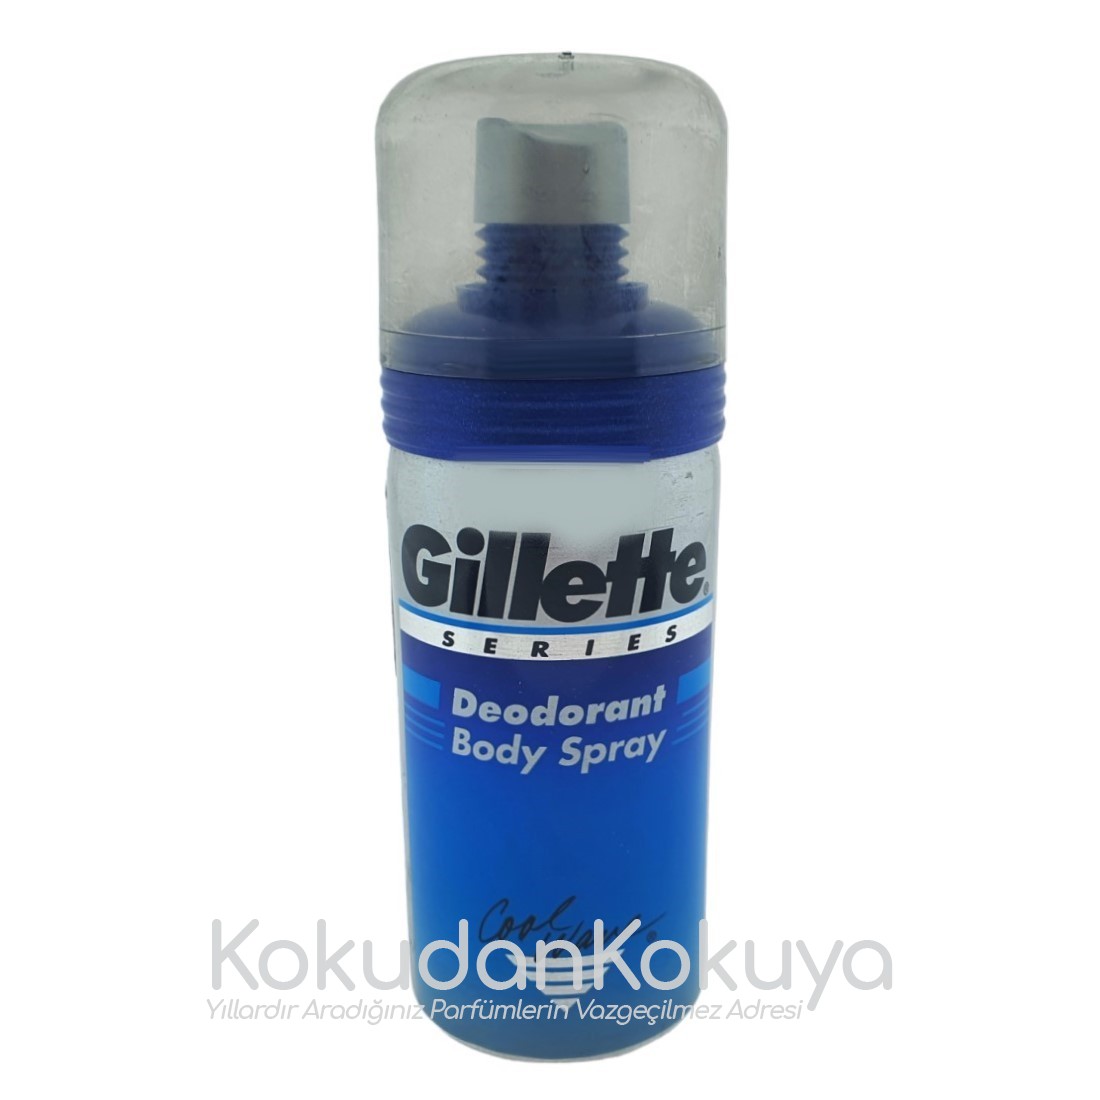 GILLETTE Gillette Series Deodorant Erkek 150ml Deodorant Spray (Metal) 